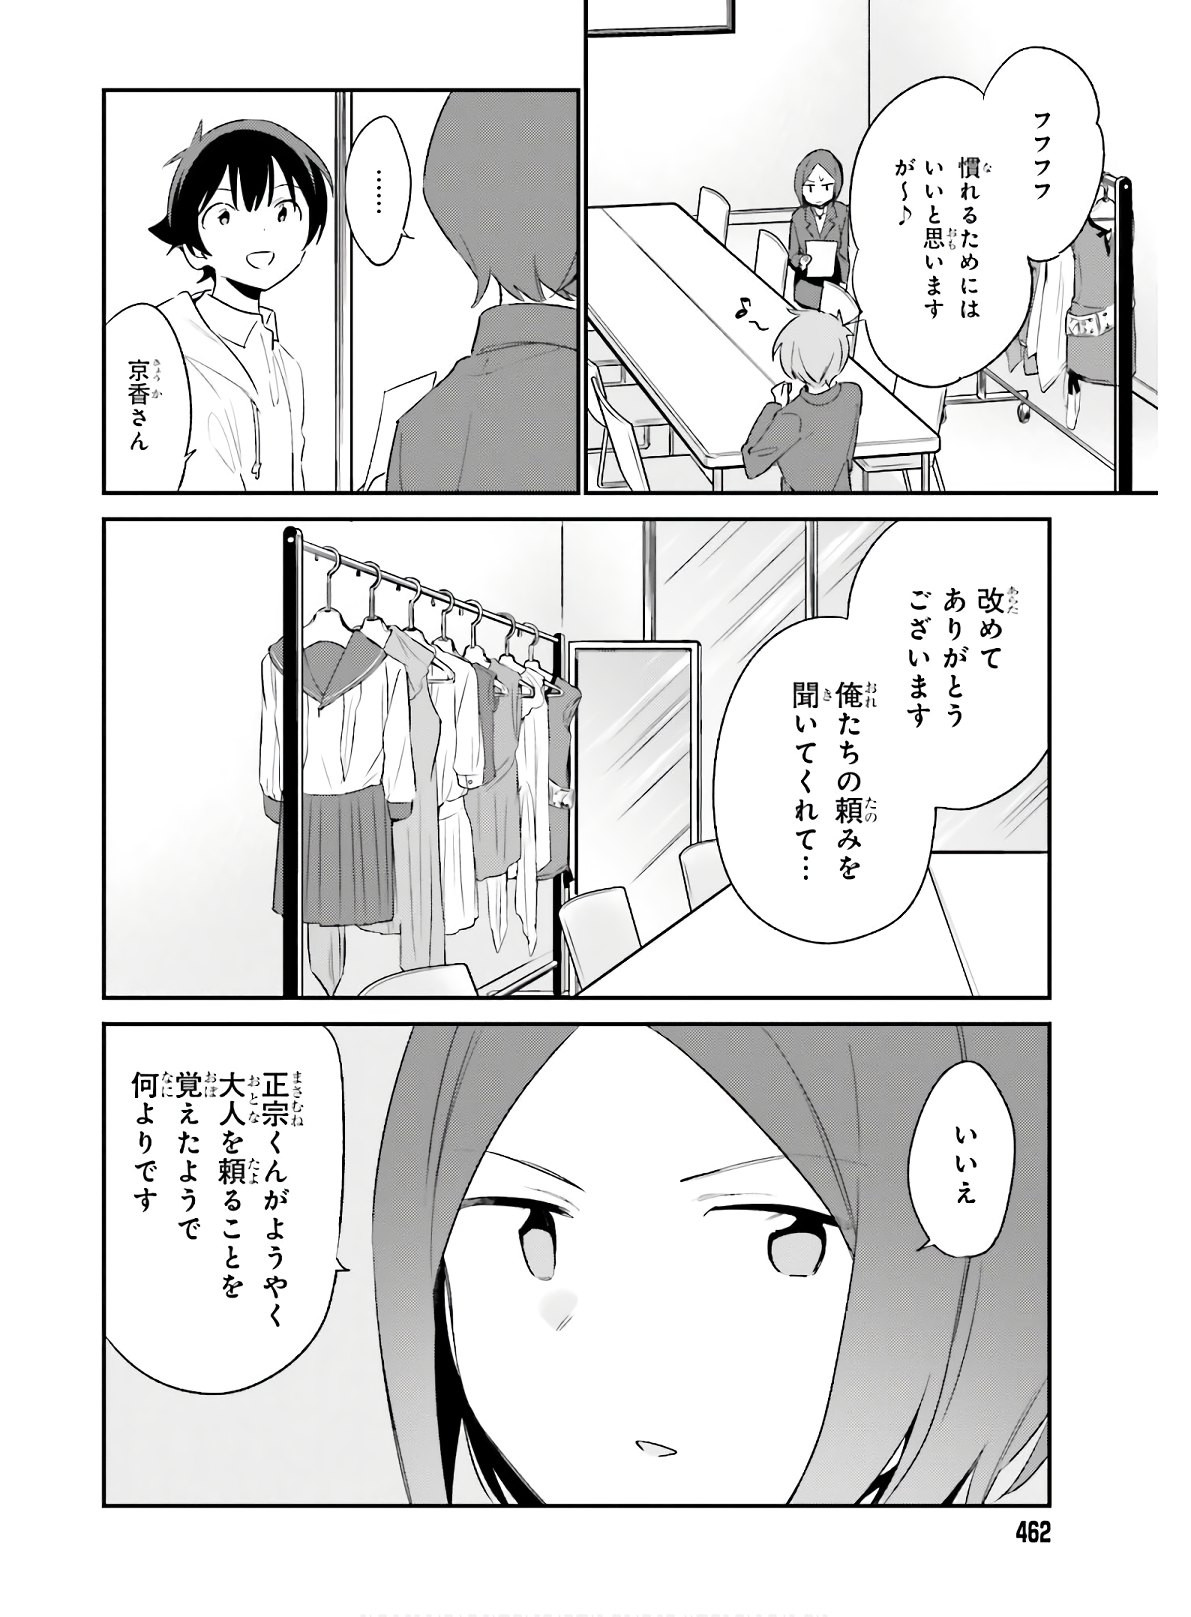 Ero Manga Sensei - Chapter 67 - Page 2